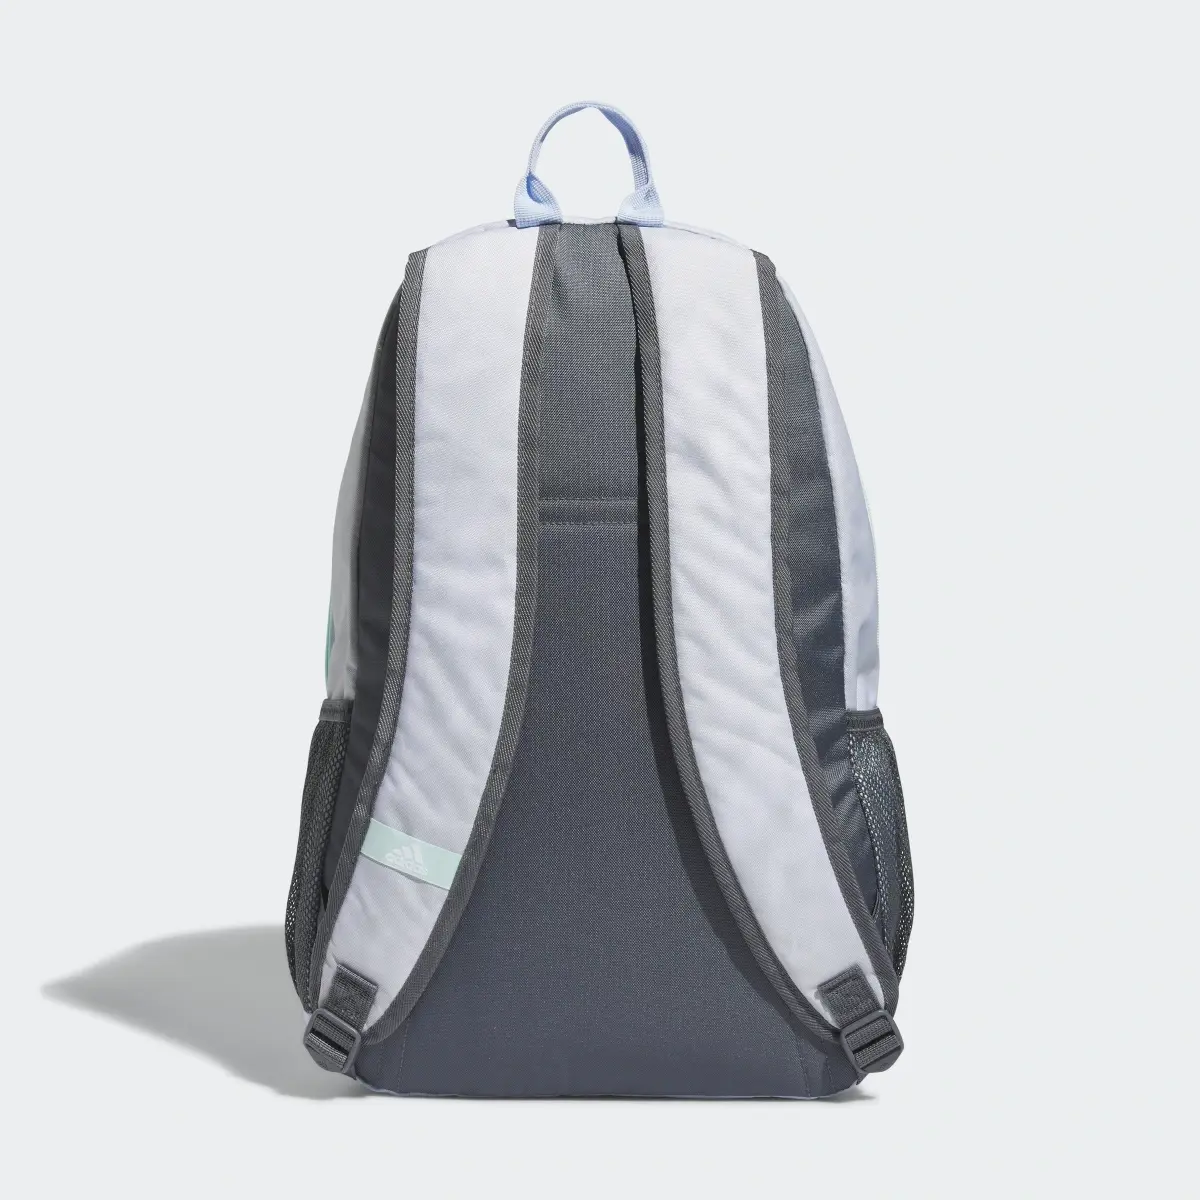 Adidas Foundation 6 Backpack. 3